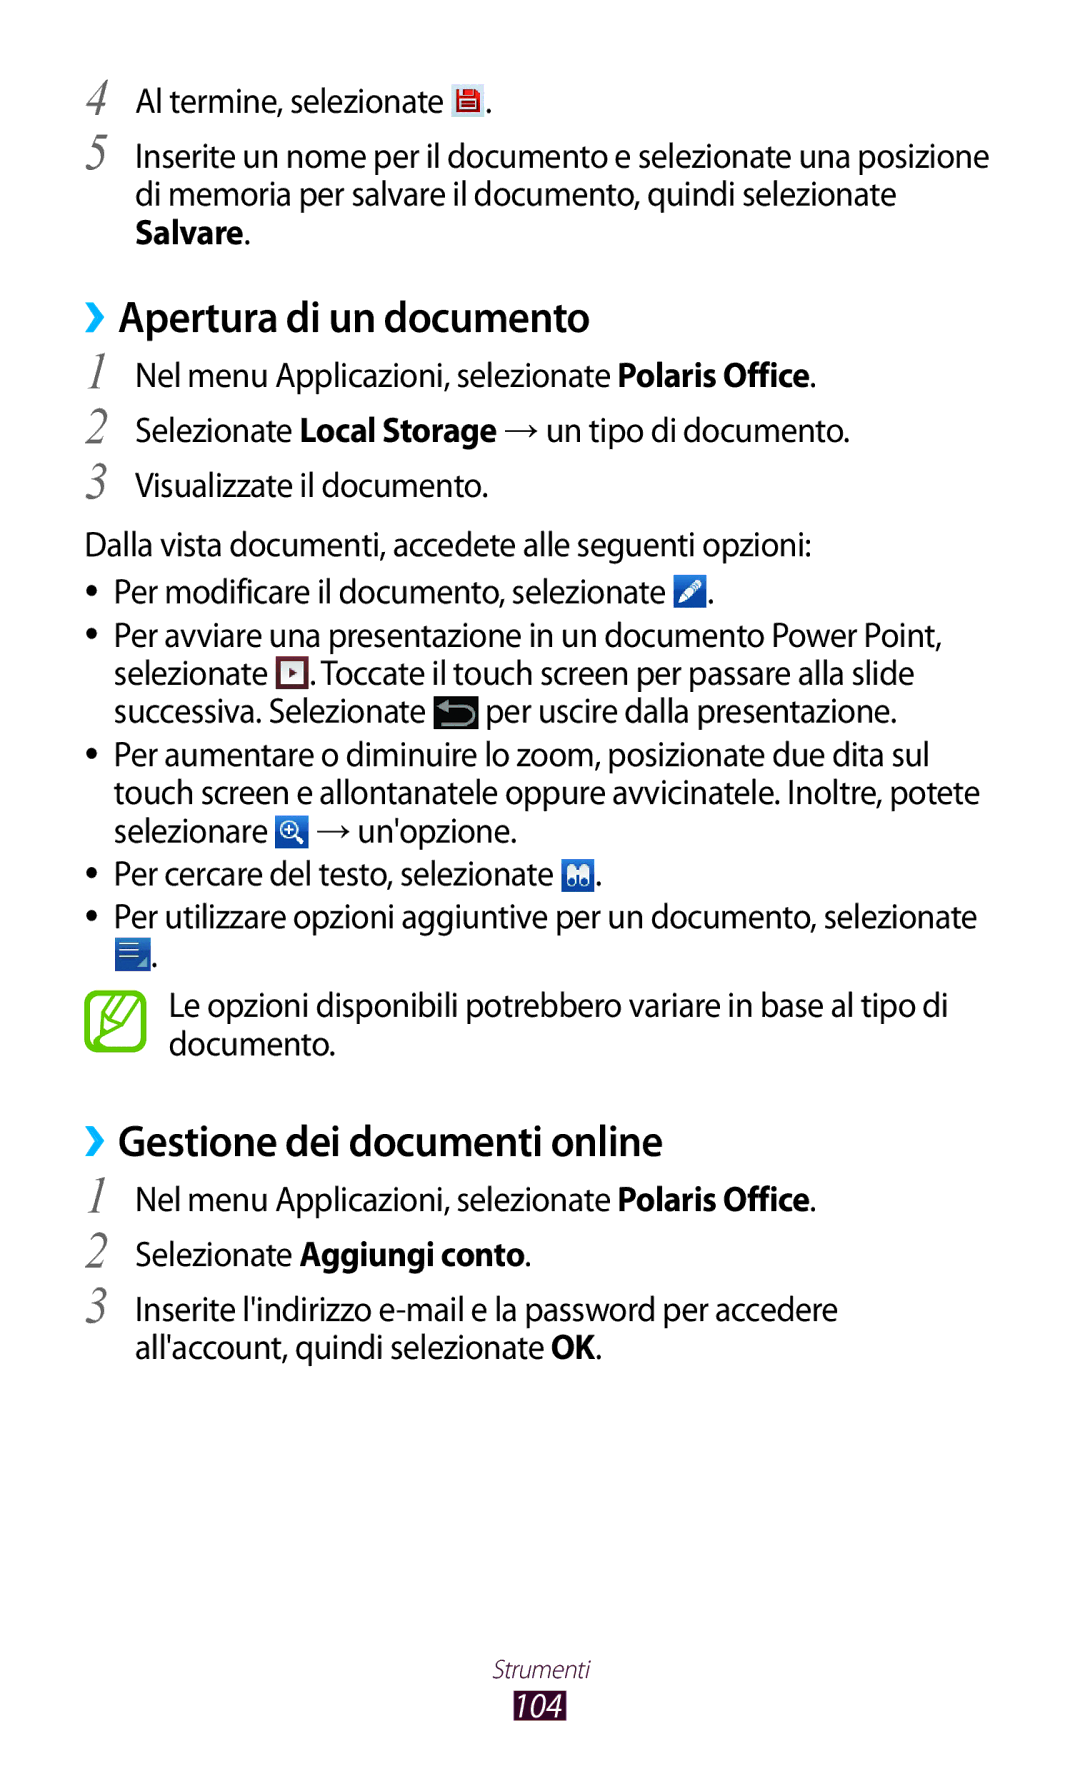 Samsung GT-P7500FKDOMN manual ››Apertura di un documento, ››Gestione dei documenti online, Selezionate Aggiungi conto, 104 